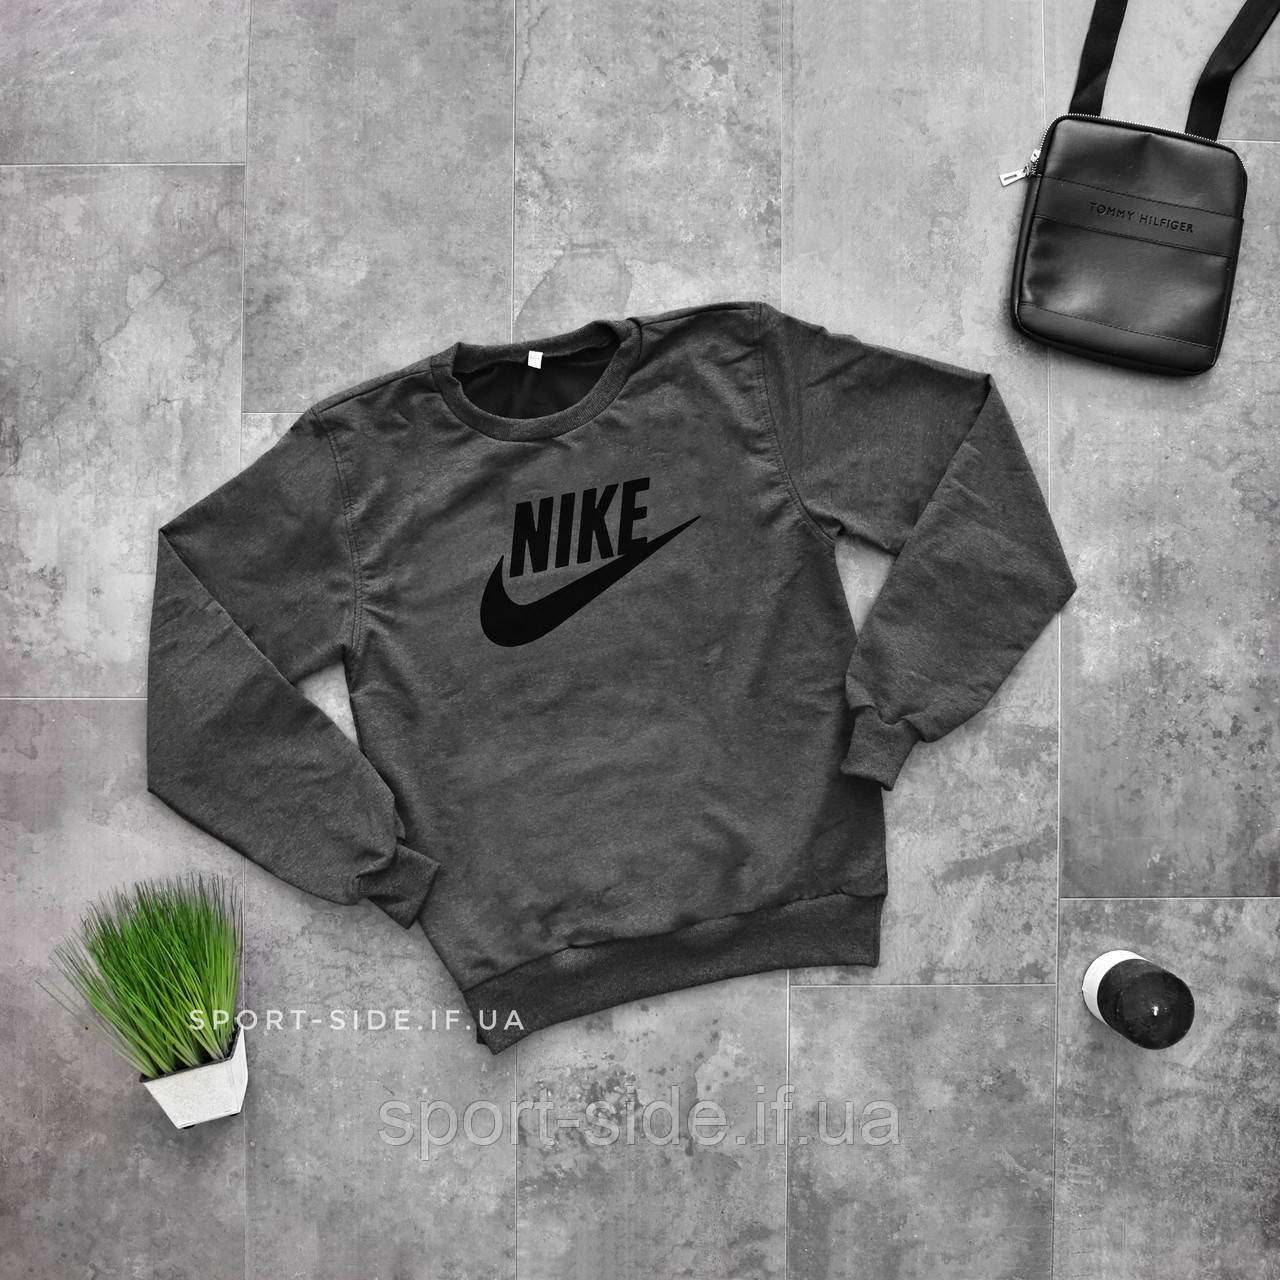 

Мужской свитшот Nike (Найк) темно серый (большая черная эмблема) толстовка лонгслив (чоловічий світшот)